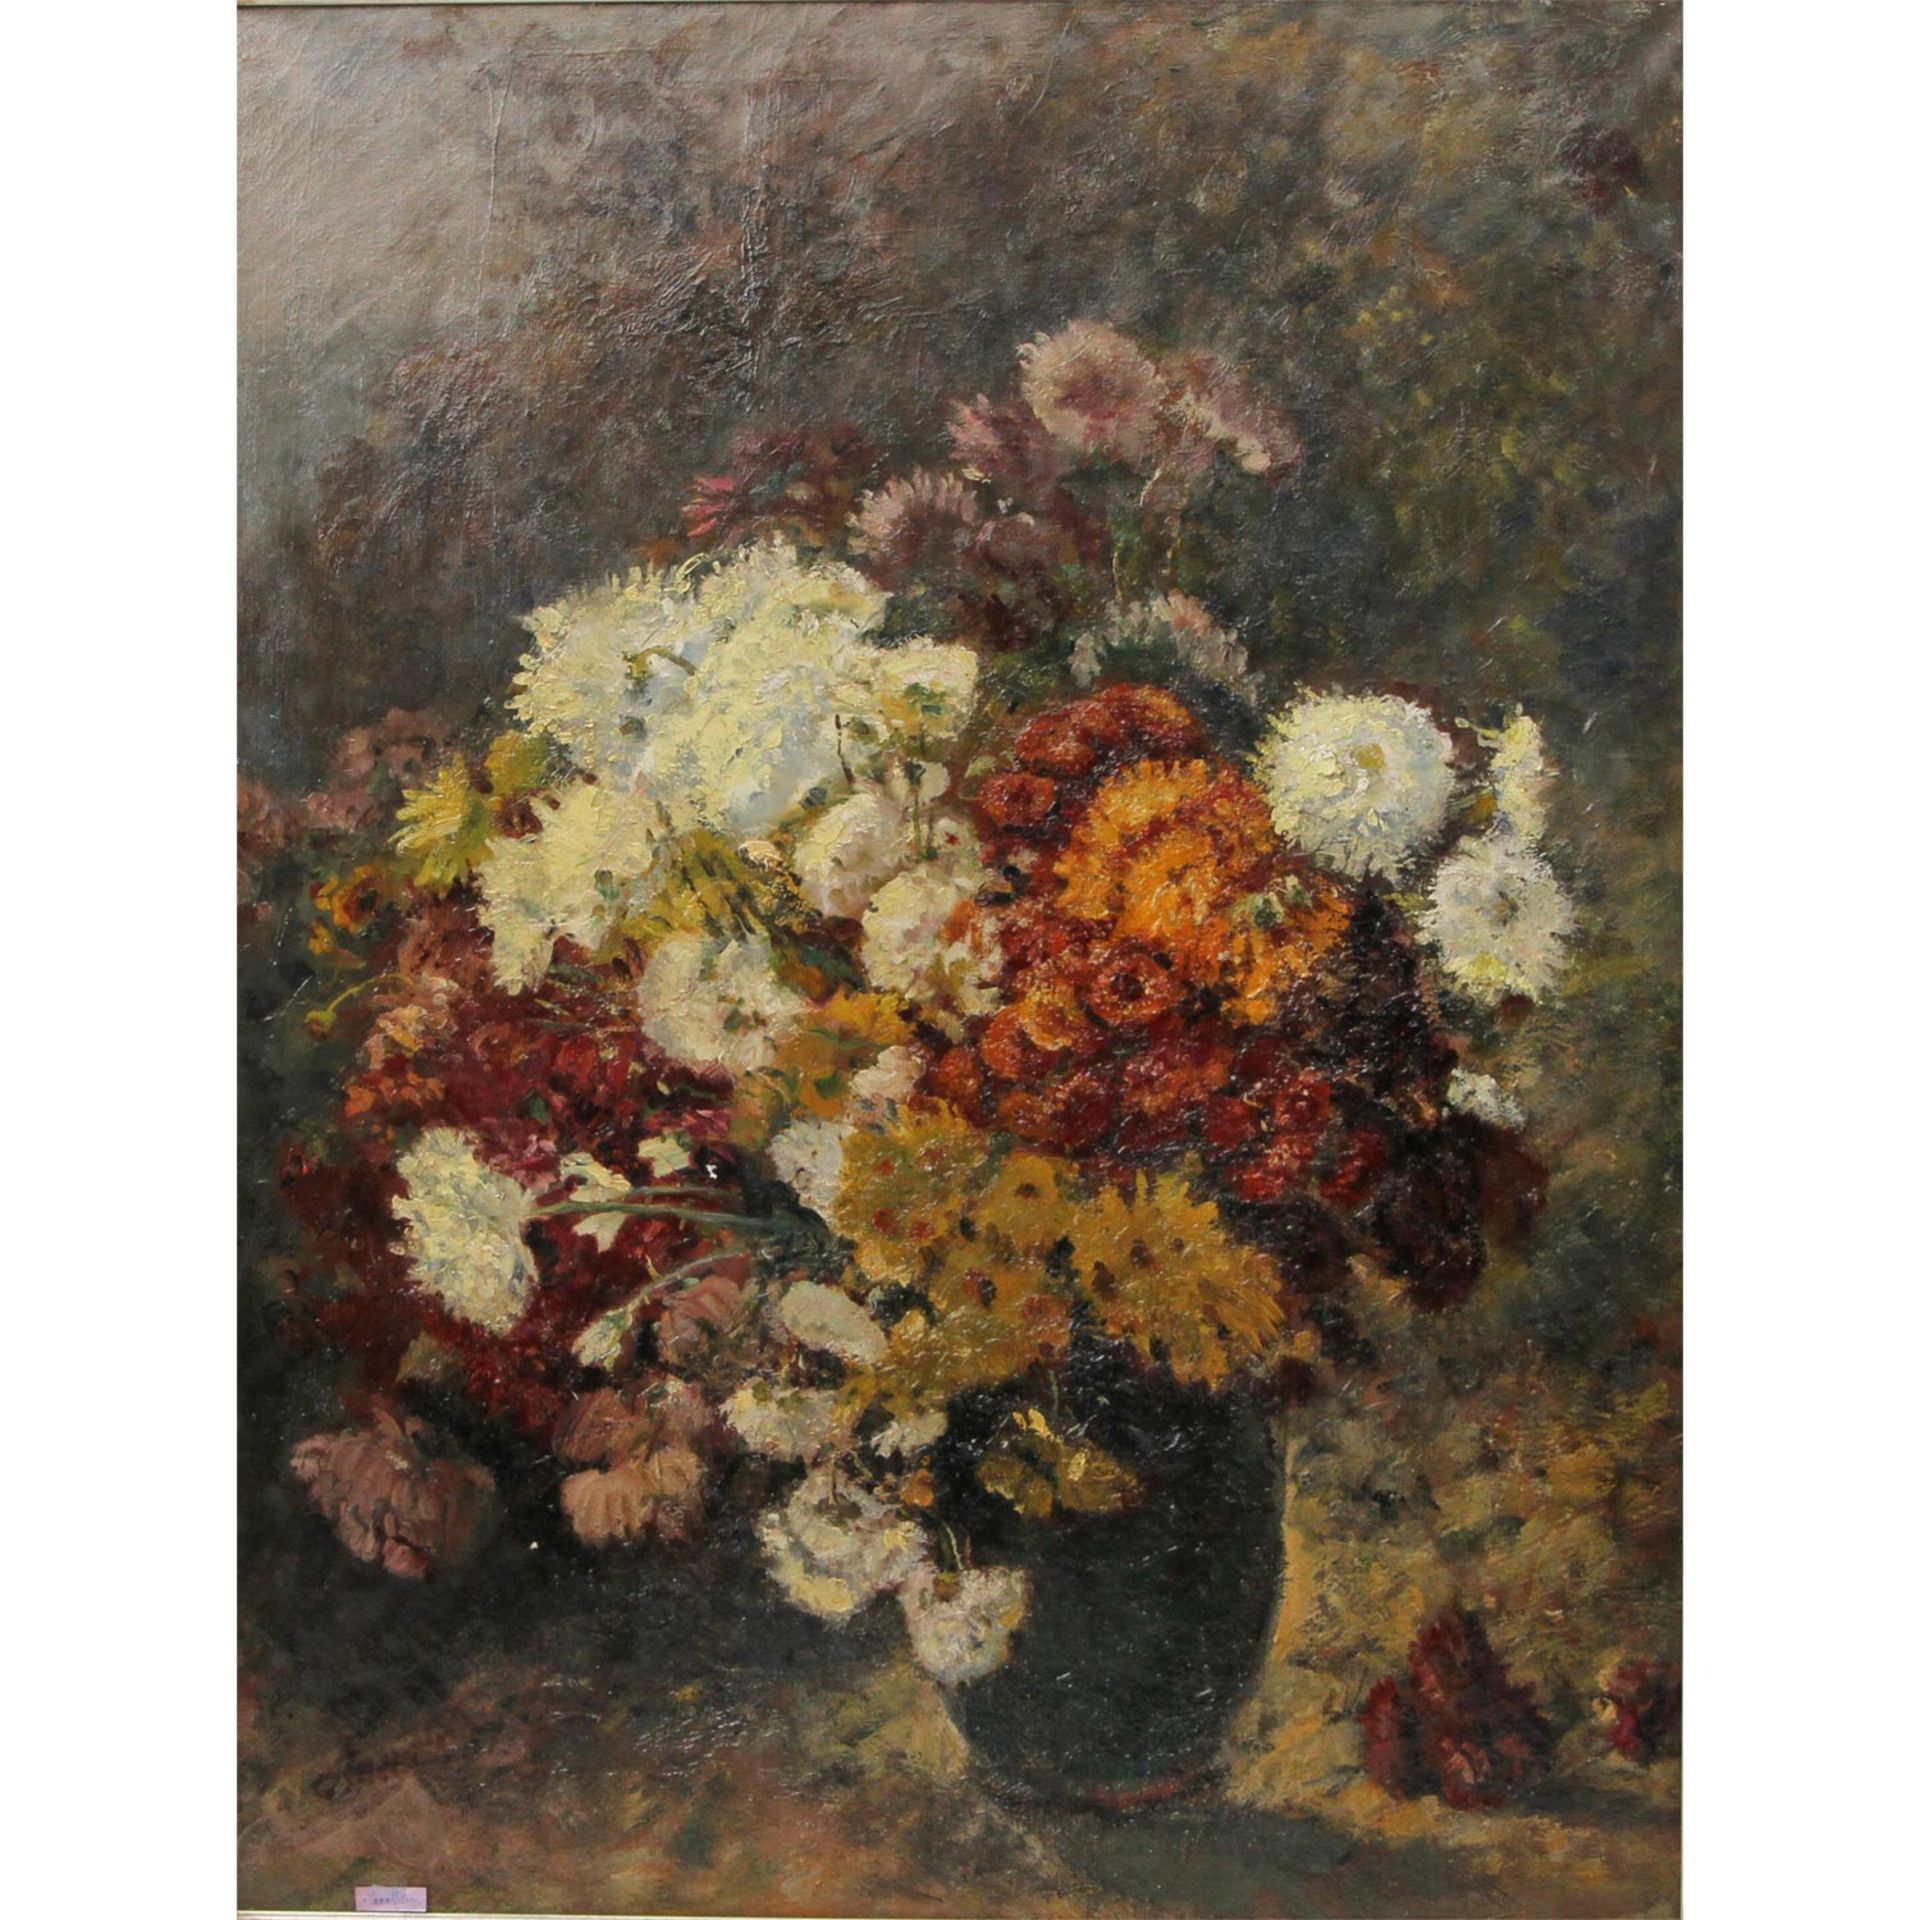 PETERS, ANNA (1843-1926): Blumenstillleben mit Chrysanthemen, 19./20. Jh., sign. u.l., Öl/Lwd.,